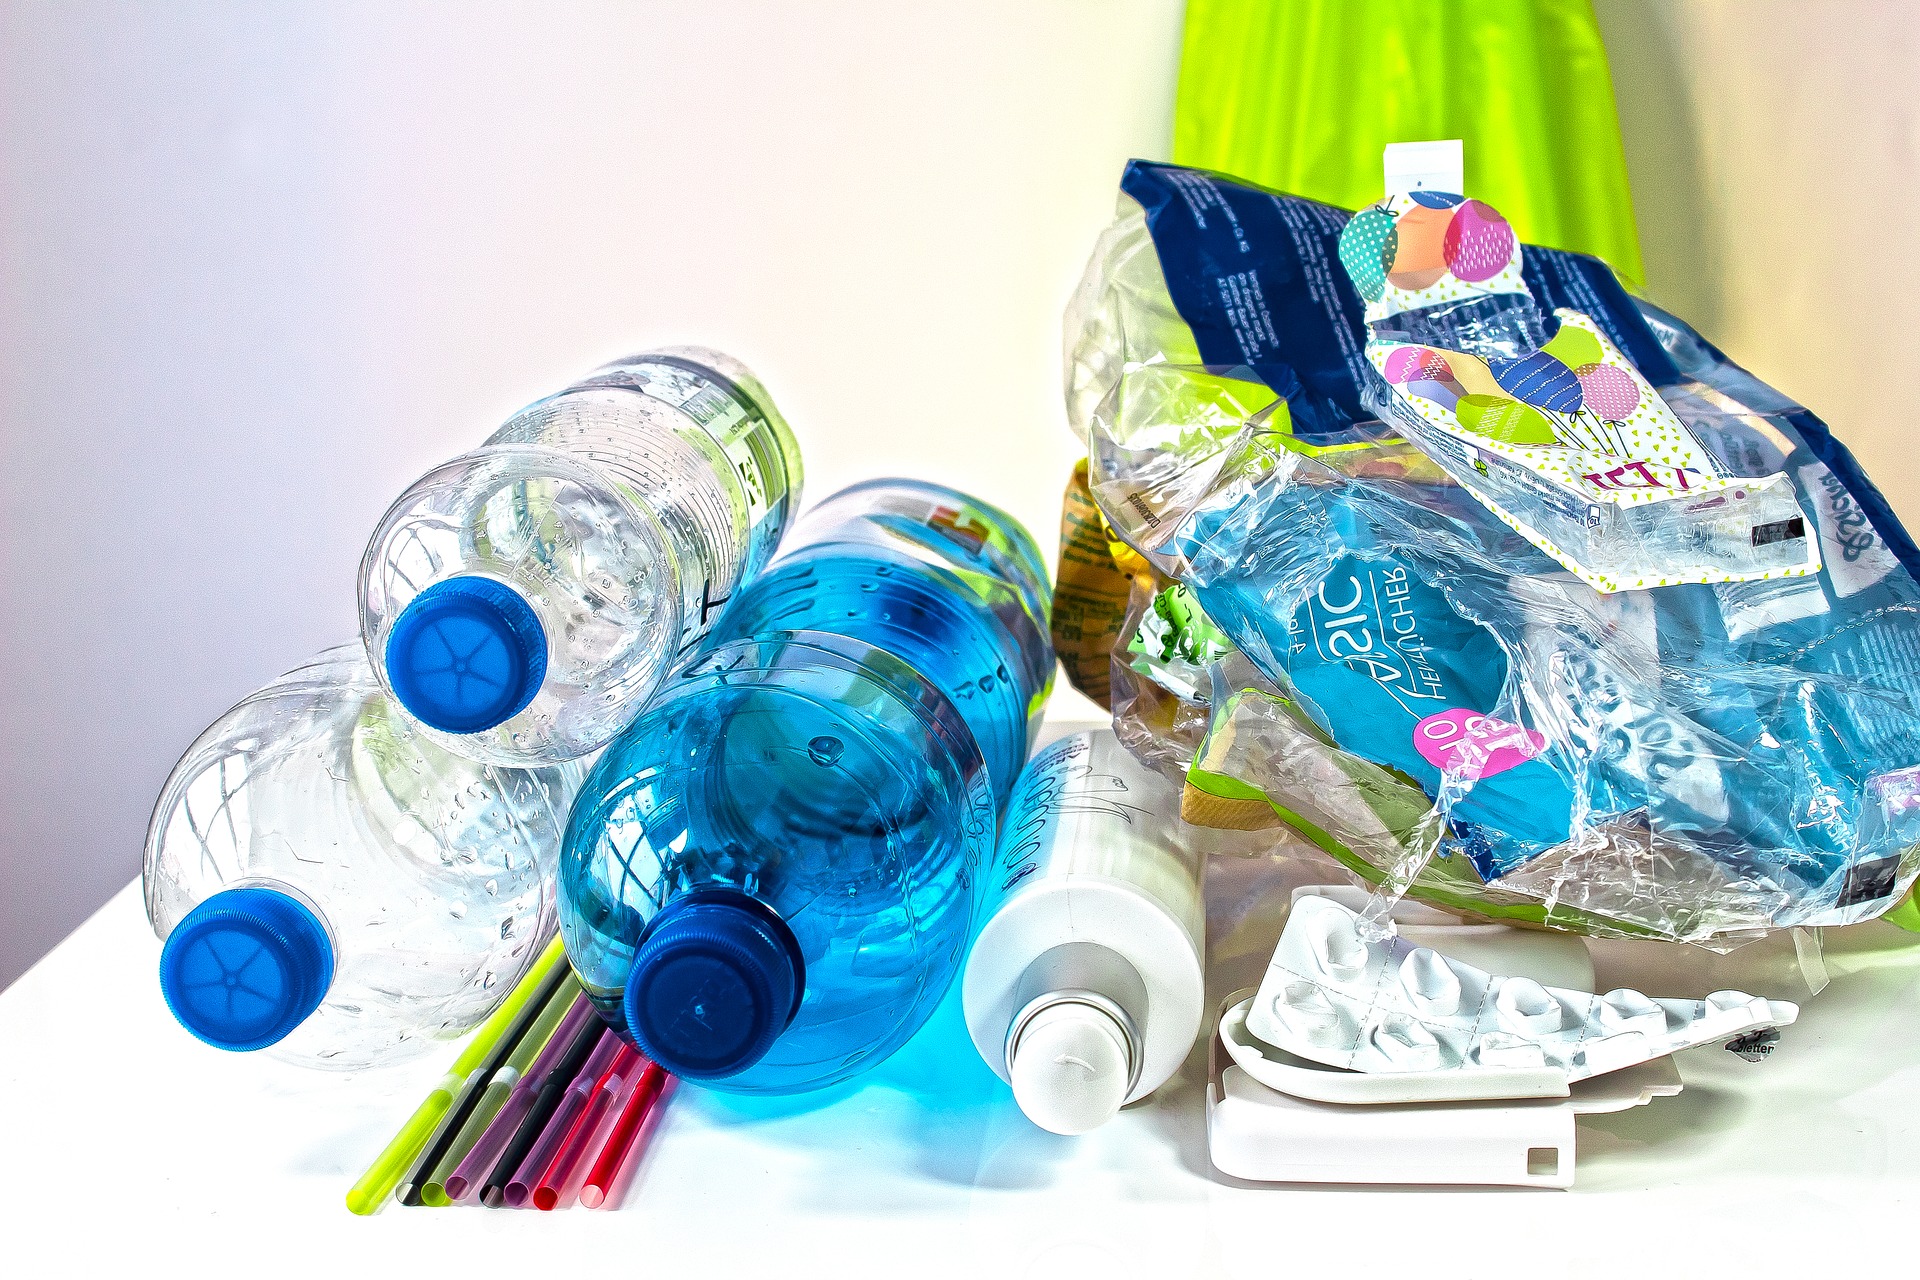 Reducing plastic waste